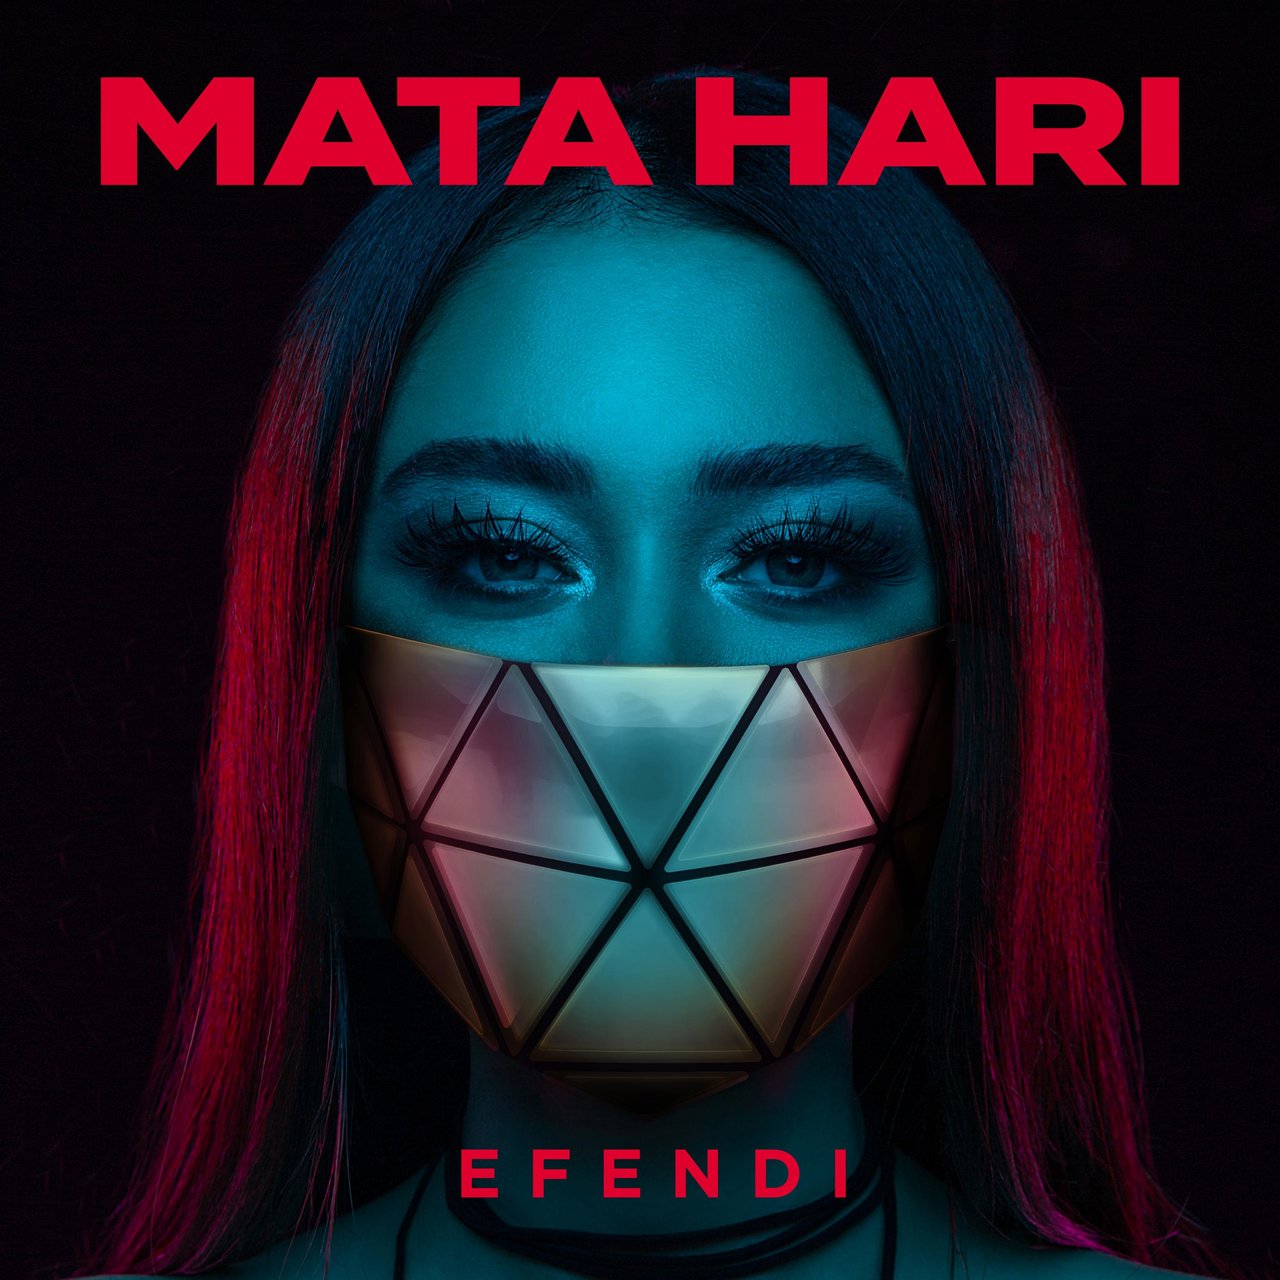 Efendi Mata Hari cover artwork